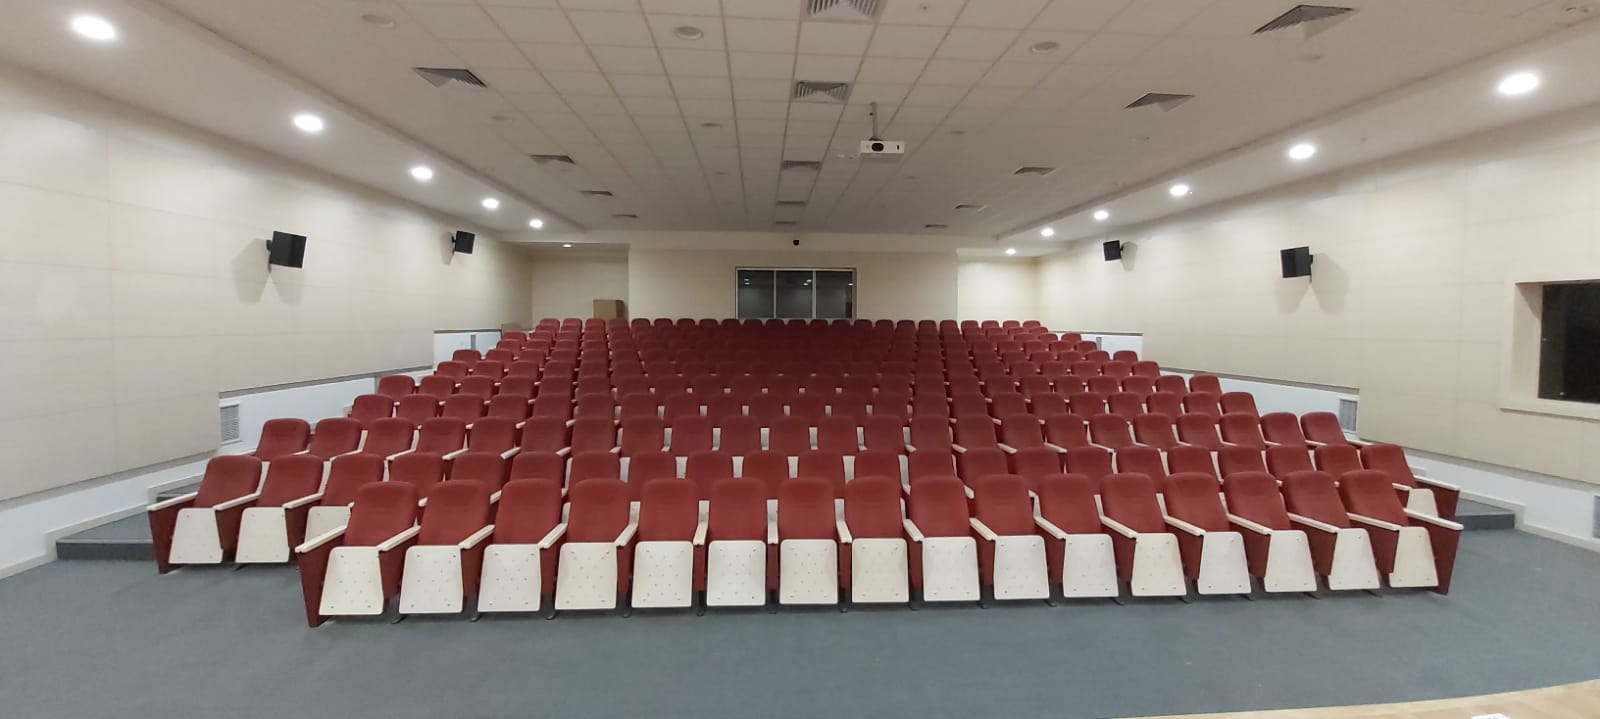 Kayseri Erciyes Üniversitesi Kongre ve Kültür Merkezi